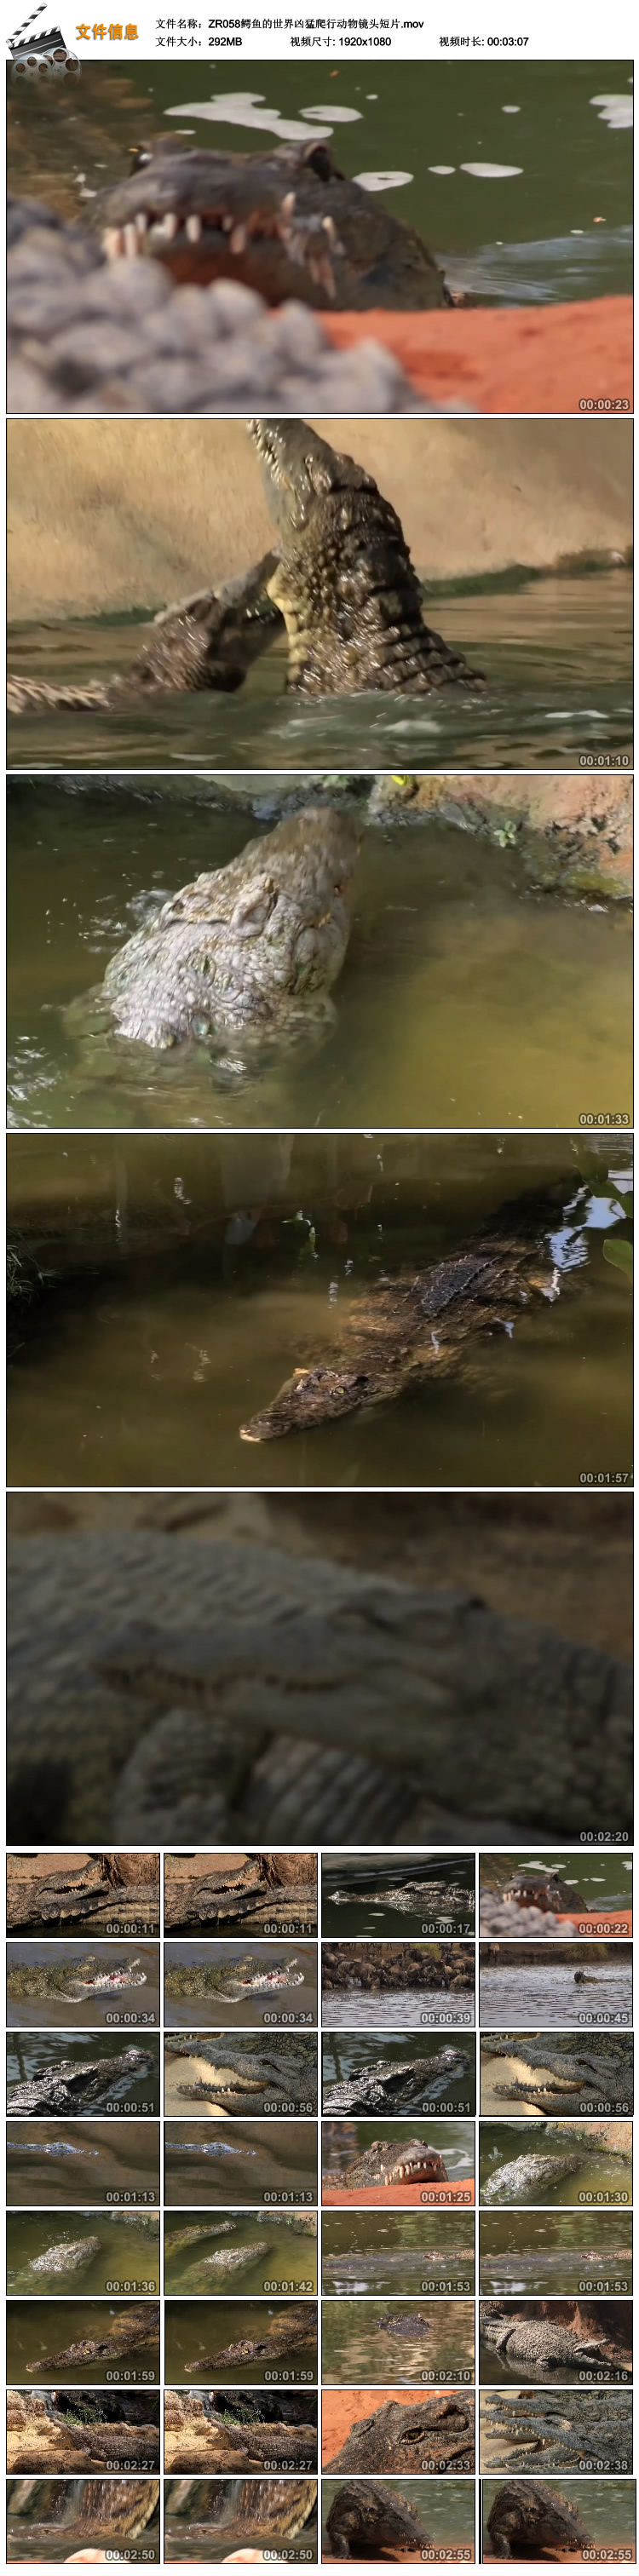 鳄鱼 凶猛爬行动物镜头短片鳄鱼日常生活猎食高清实拍视频素材